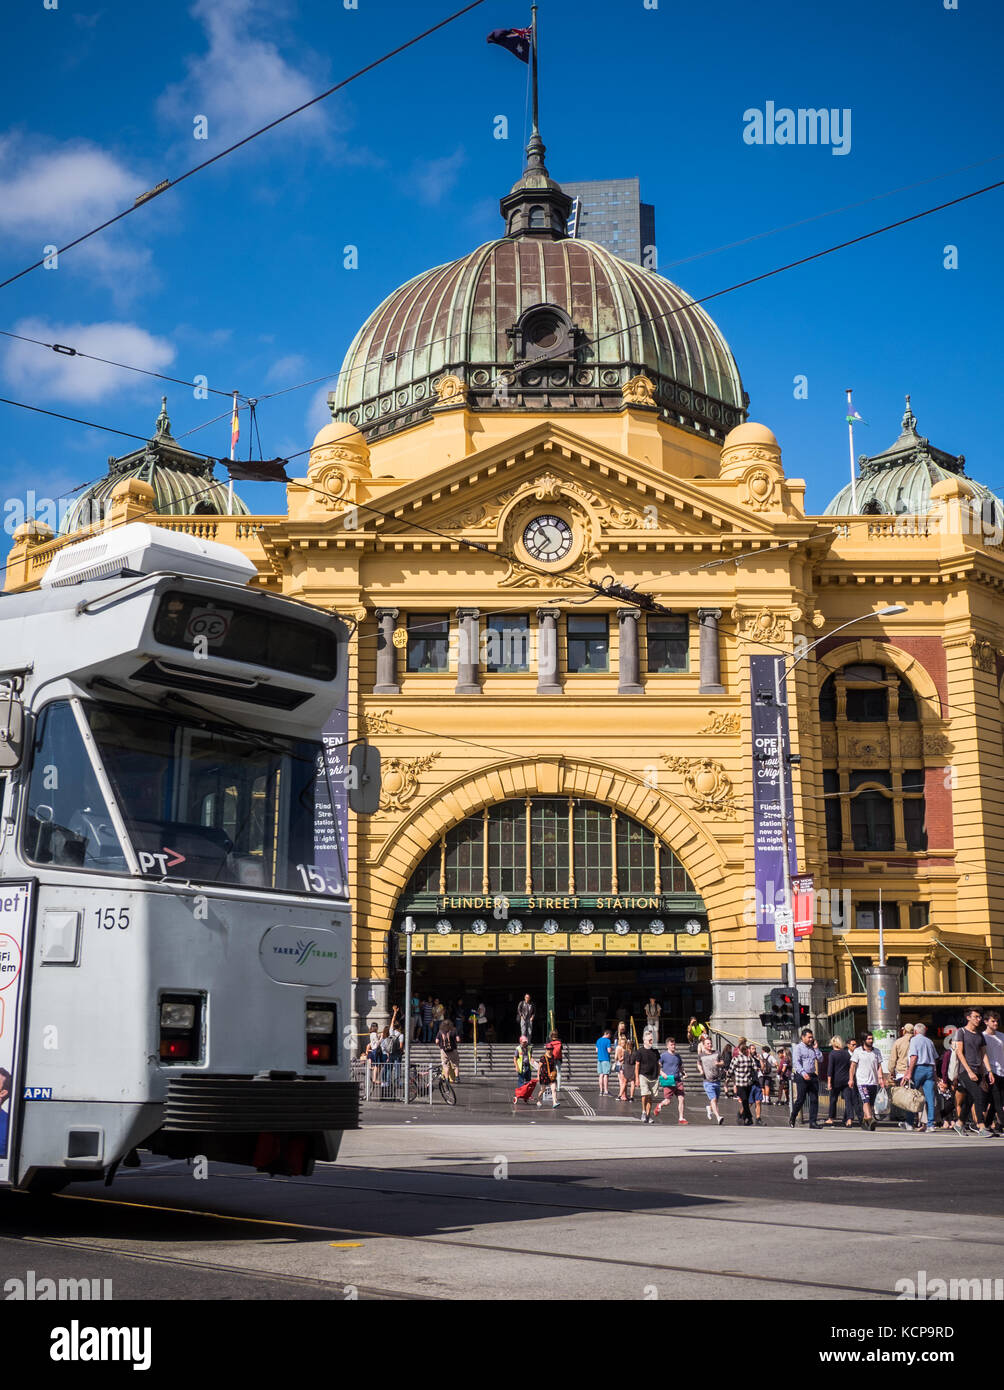 Una vista general de la estación de Flinders Street en la ciudad Australiana de Melbourne. Foto de stock